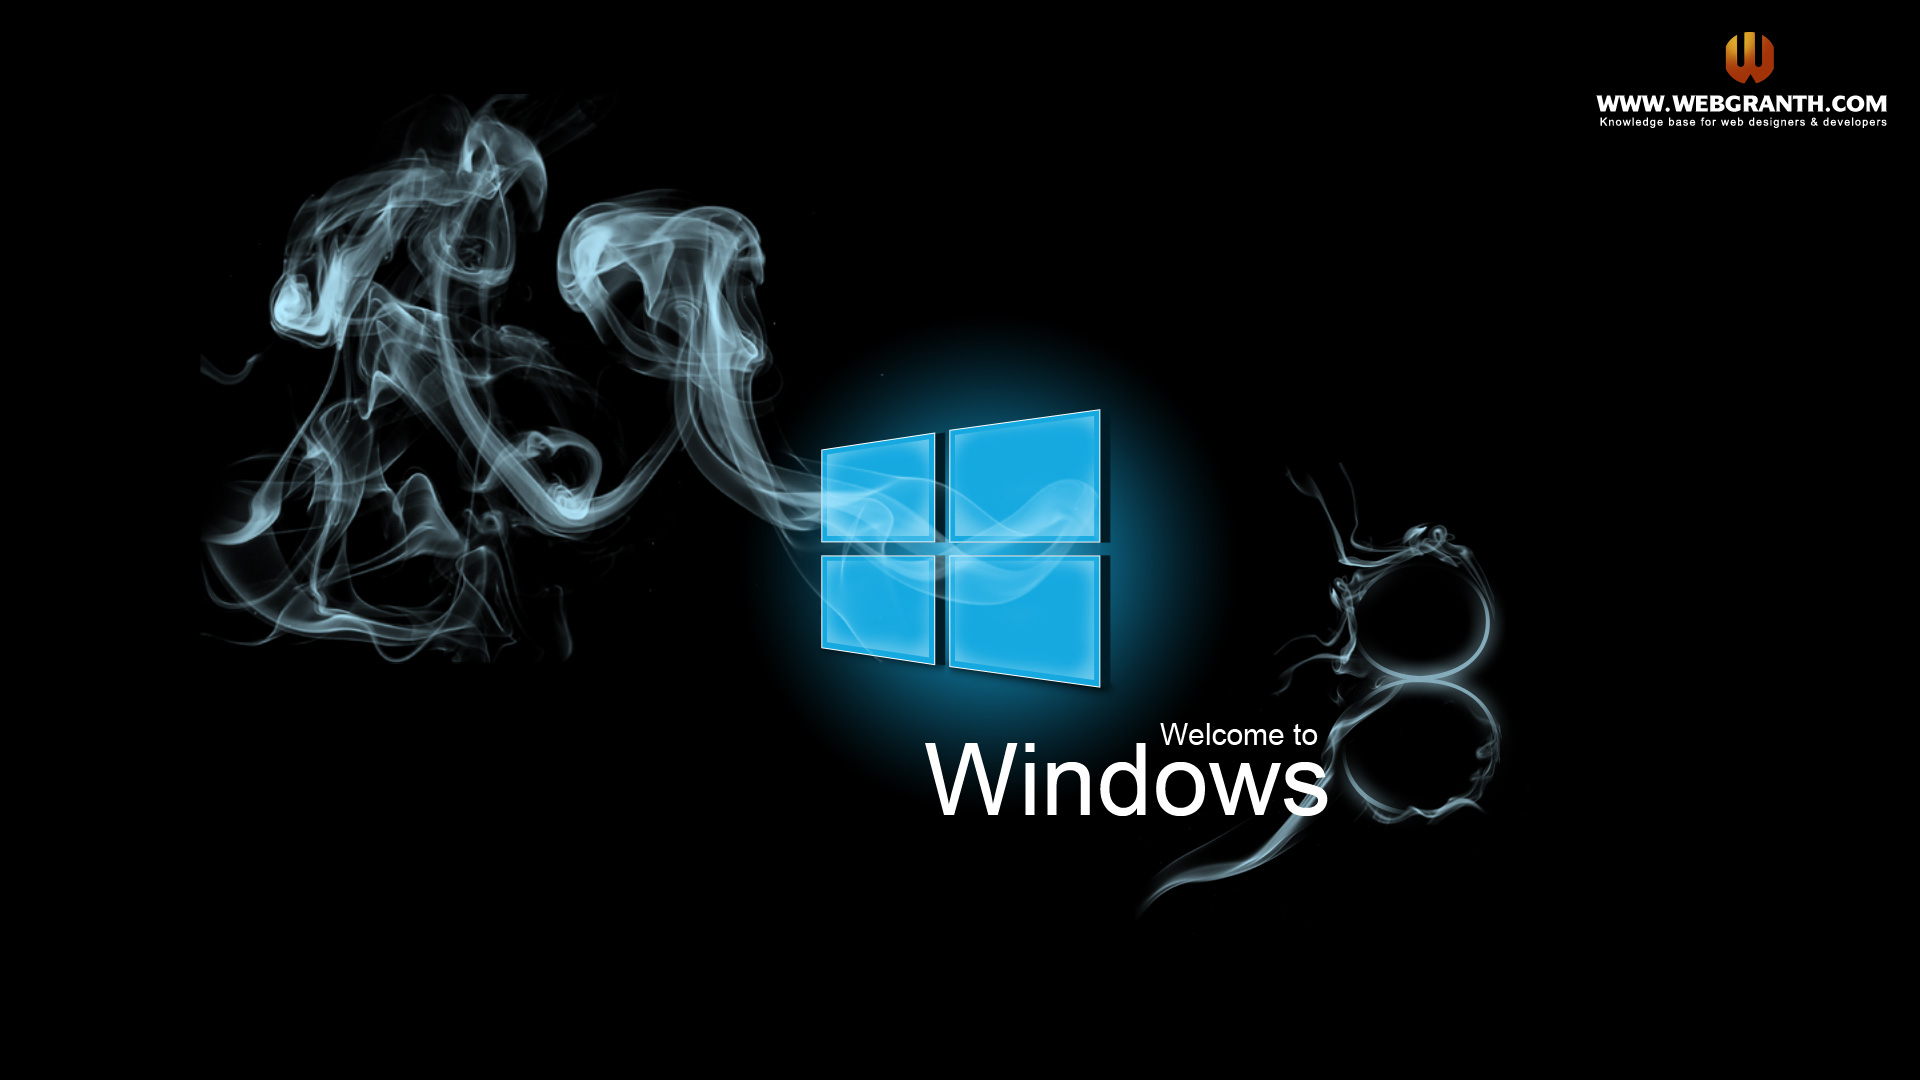 Tải hình nền Windows 8 miễn phí và trang trí màn hình máy tính của bạn theo phong cách riêng của bạn. Bạn sẽ được tận hưởng hàng ngàn tùy chọn đa dạng và đẹp mắt. Tất cả chỉ cần một click chuột để tải về và sáng tạo. Hãy truy cập trang wed để trải nghiệm ngay.